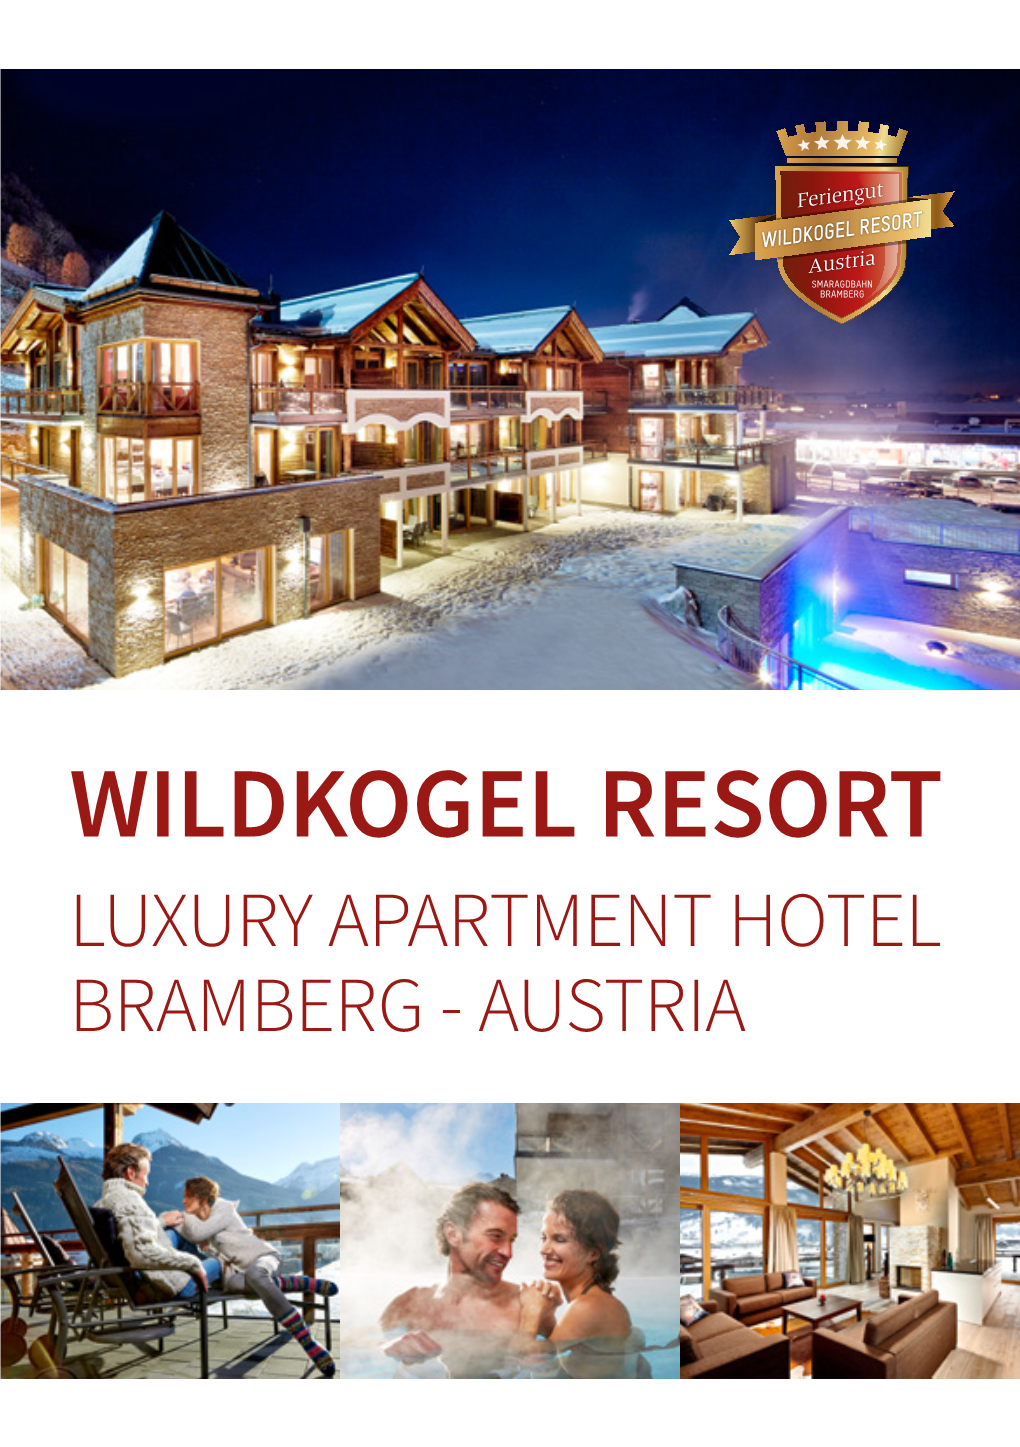 Wildkogel Resort Luxury Apartment Hotel Bramberg - Austria Wildkogel Resort